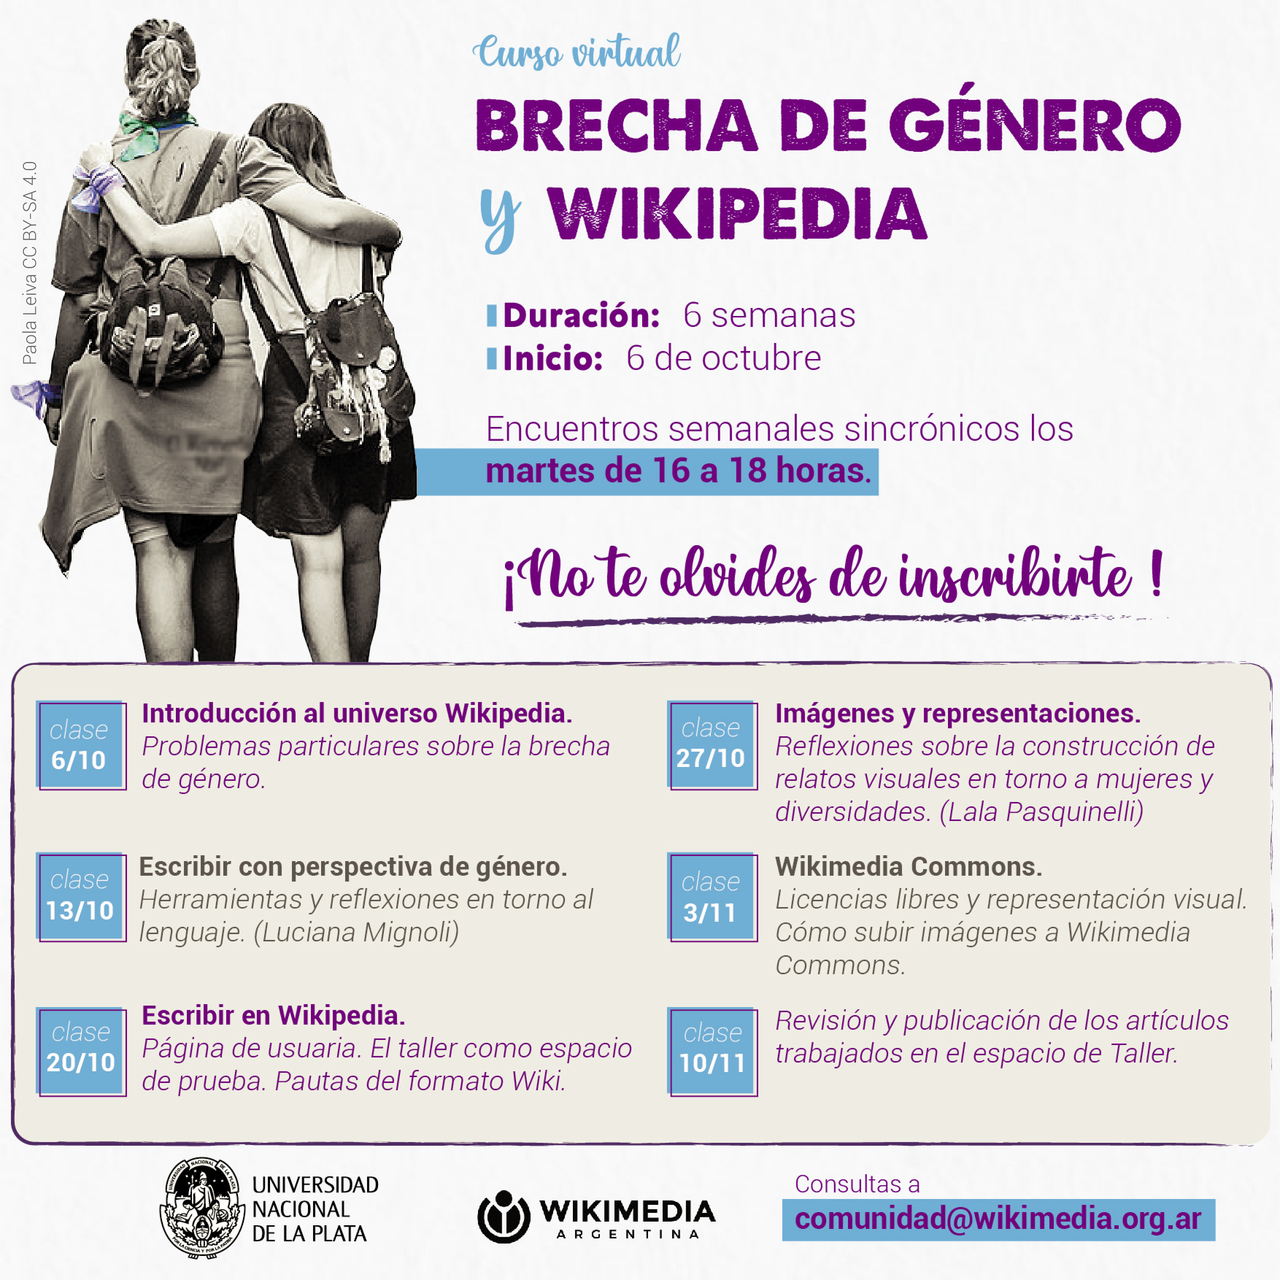 Curso virtual "Brecha de género y Wikipedia"